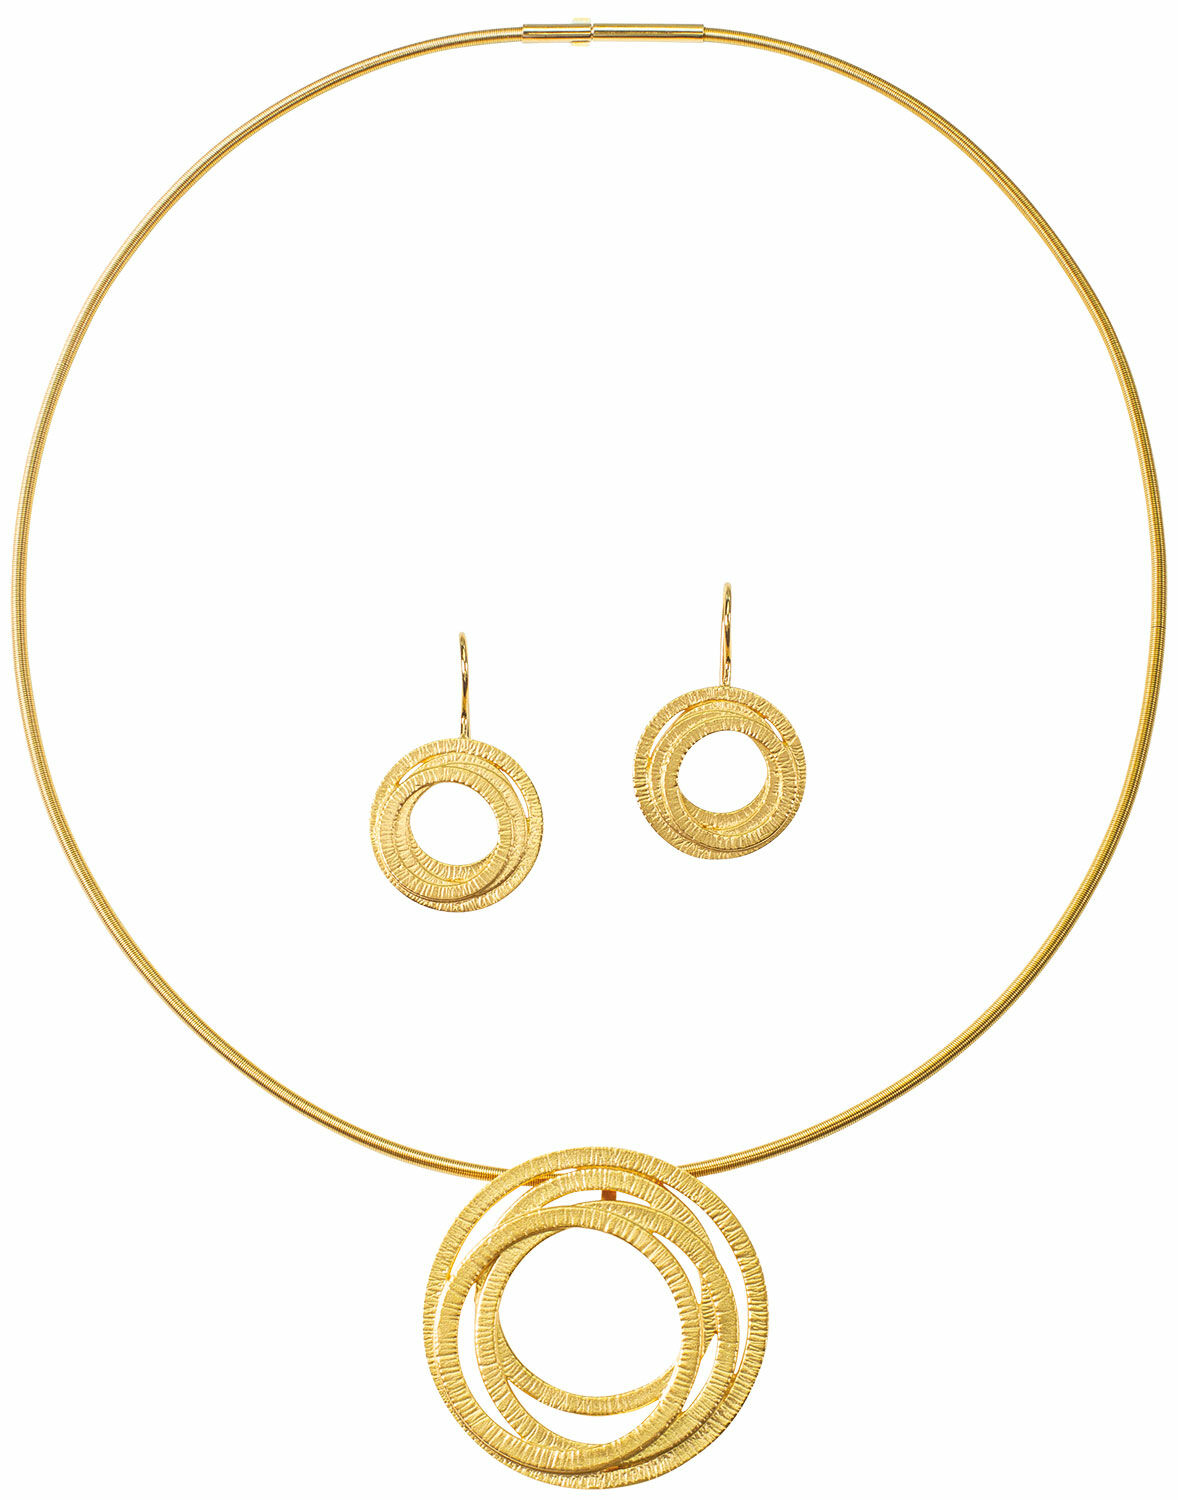 Parure de bijoux "Golden Circles" (cercles d'or)